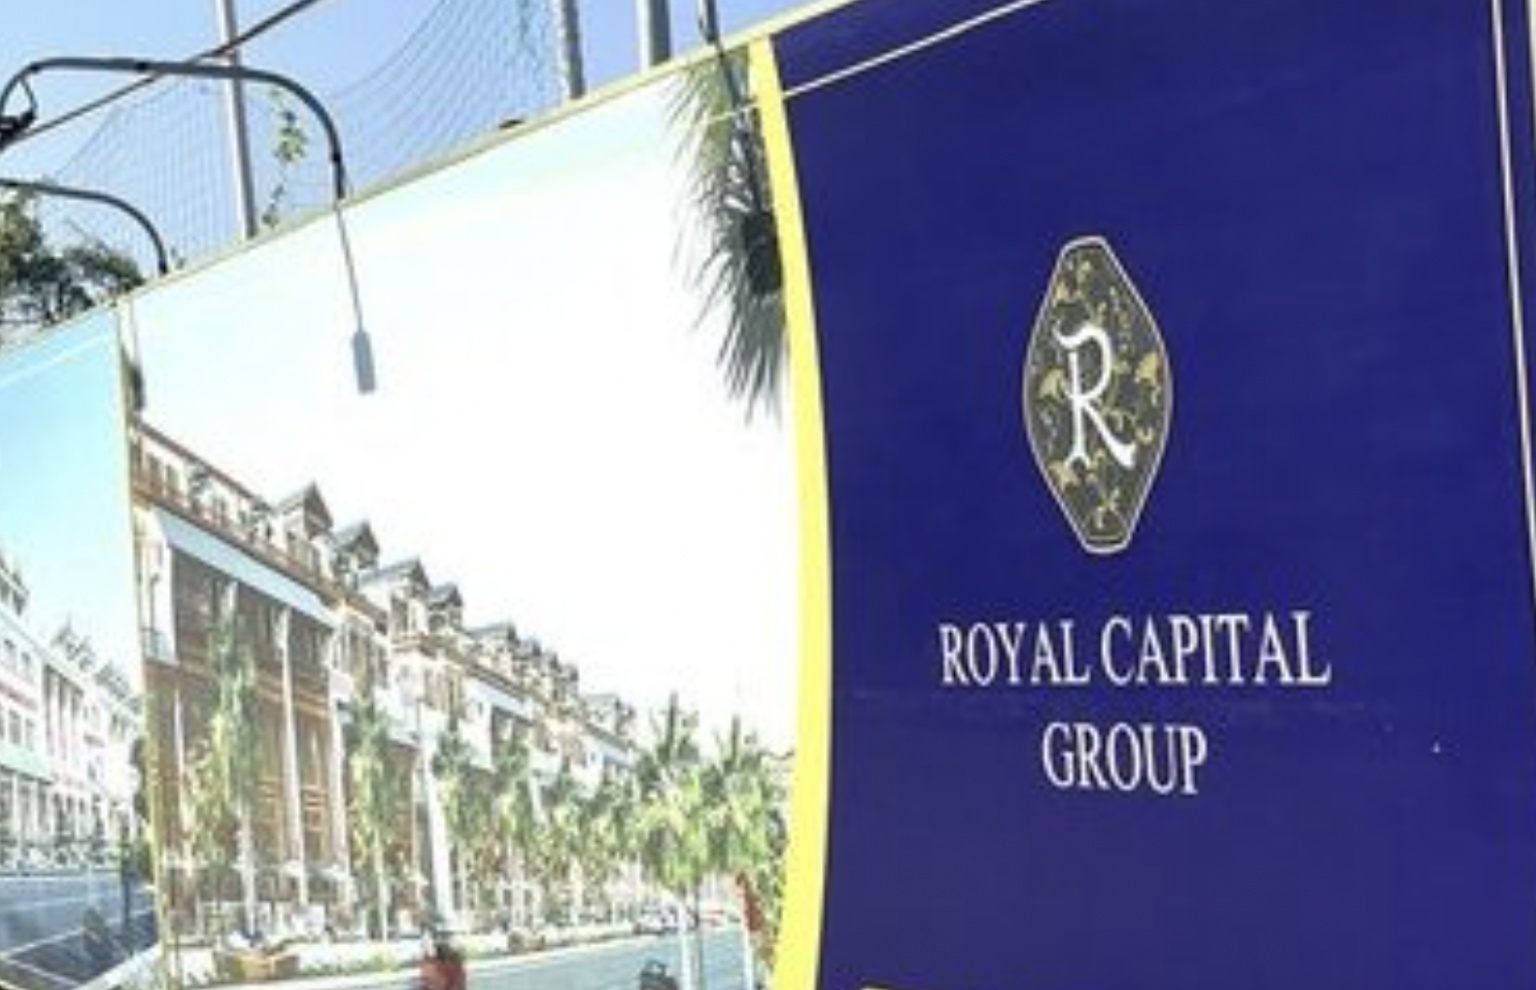 Royal Capital Group và Vinacapital Hội An nợ bảo hiểm hàng trăm người lao động